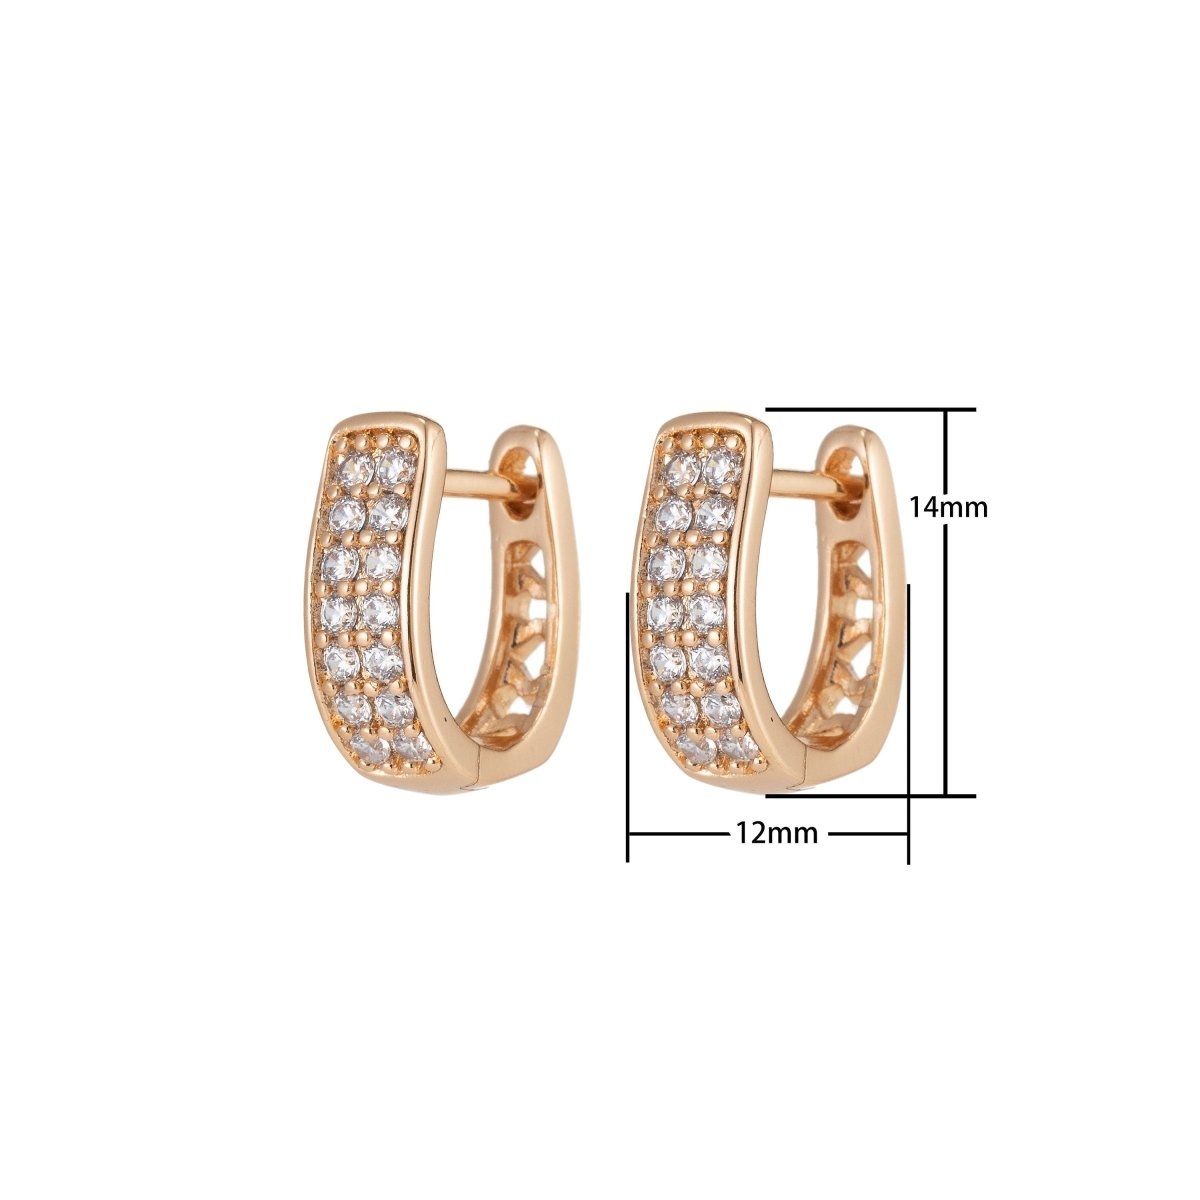 Gold Small hoops, huggie hoops, tiny hoop earrings, delicate hoops Micro Pave minimalist earrings, dainty earrings minimal hoops Q-054 - DLUXCA